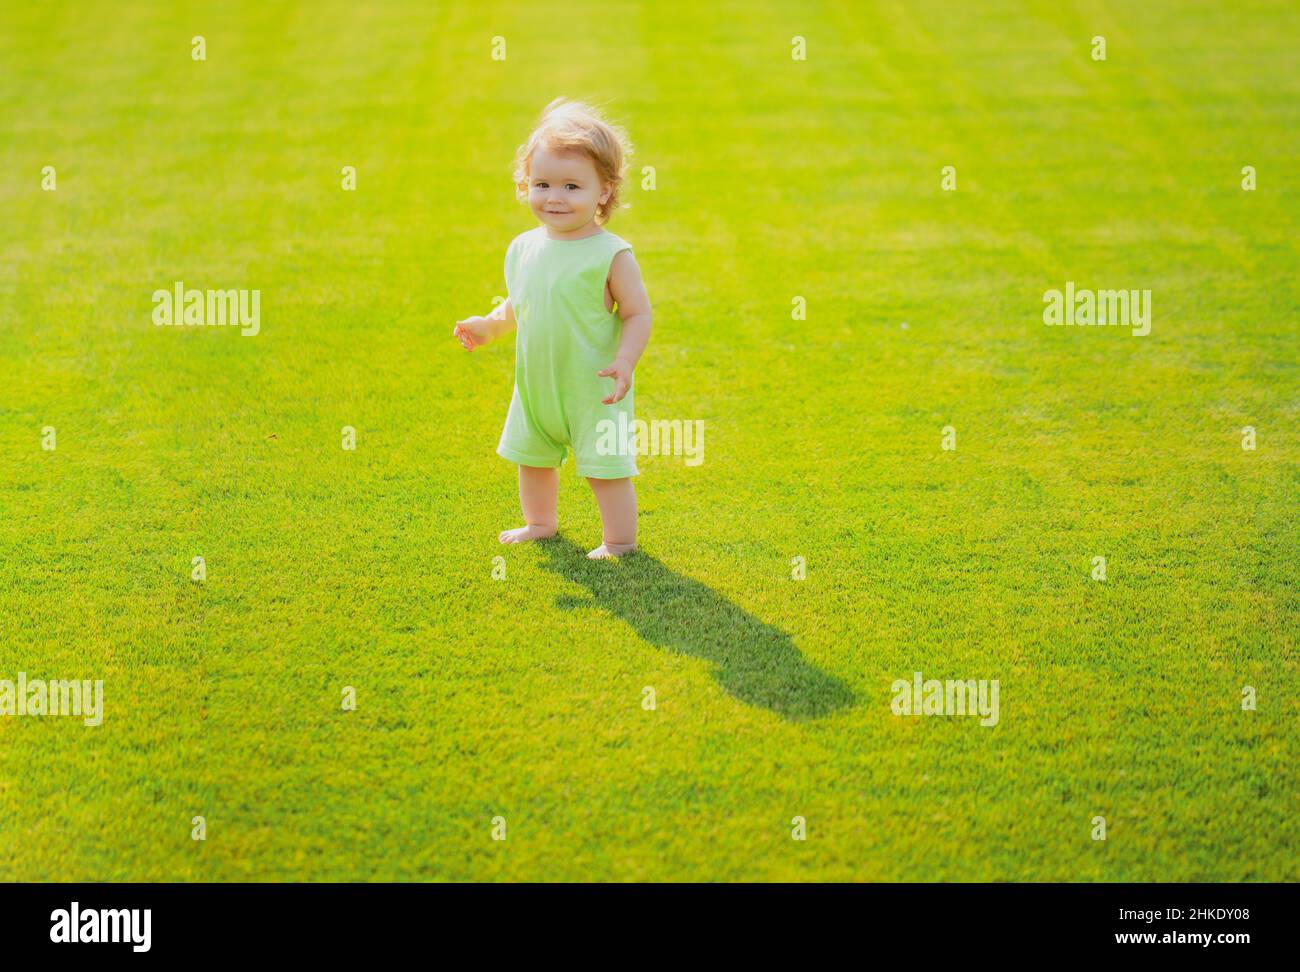 Baby steht barfuß auf dem grünen Rasen. Kleiner Junge, der im Sommerpark spielt. Glückliche Kindheit und Kinderpflege. Stockfoto